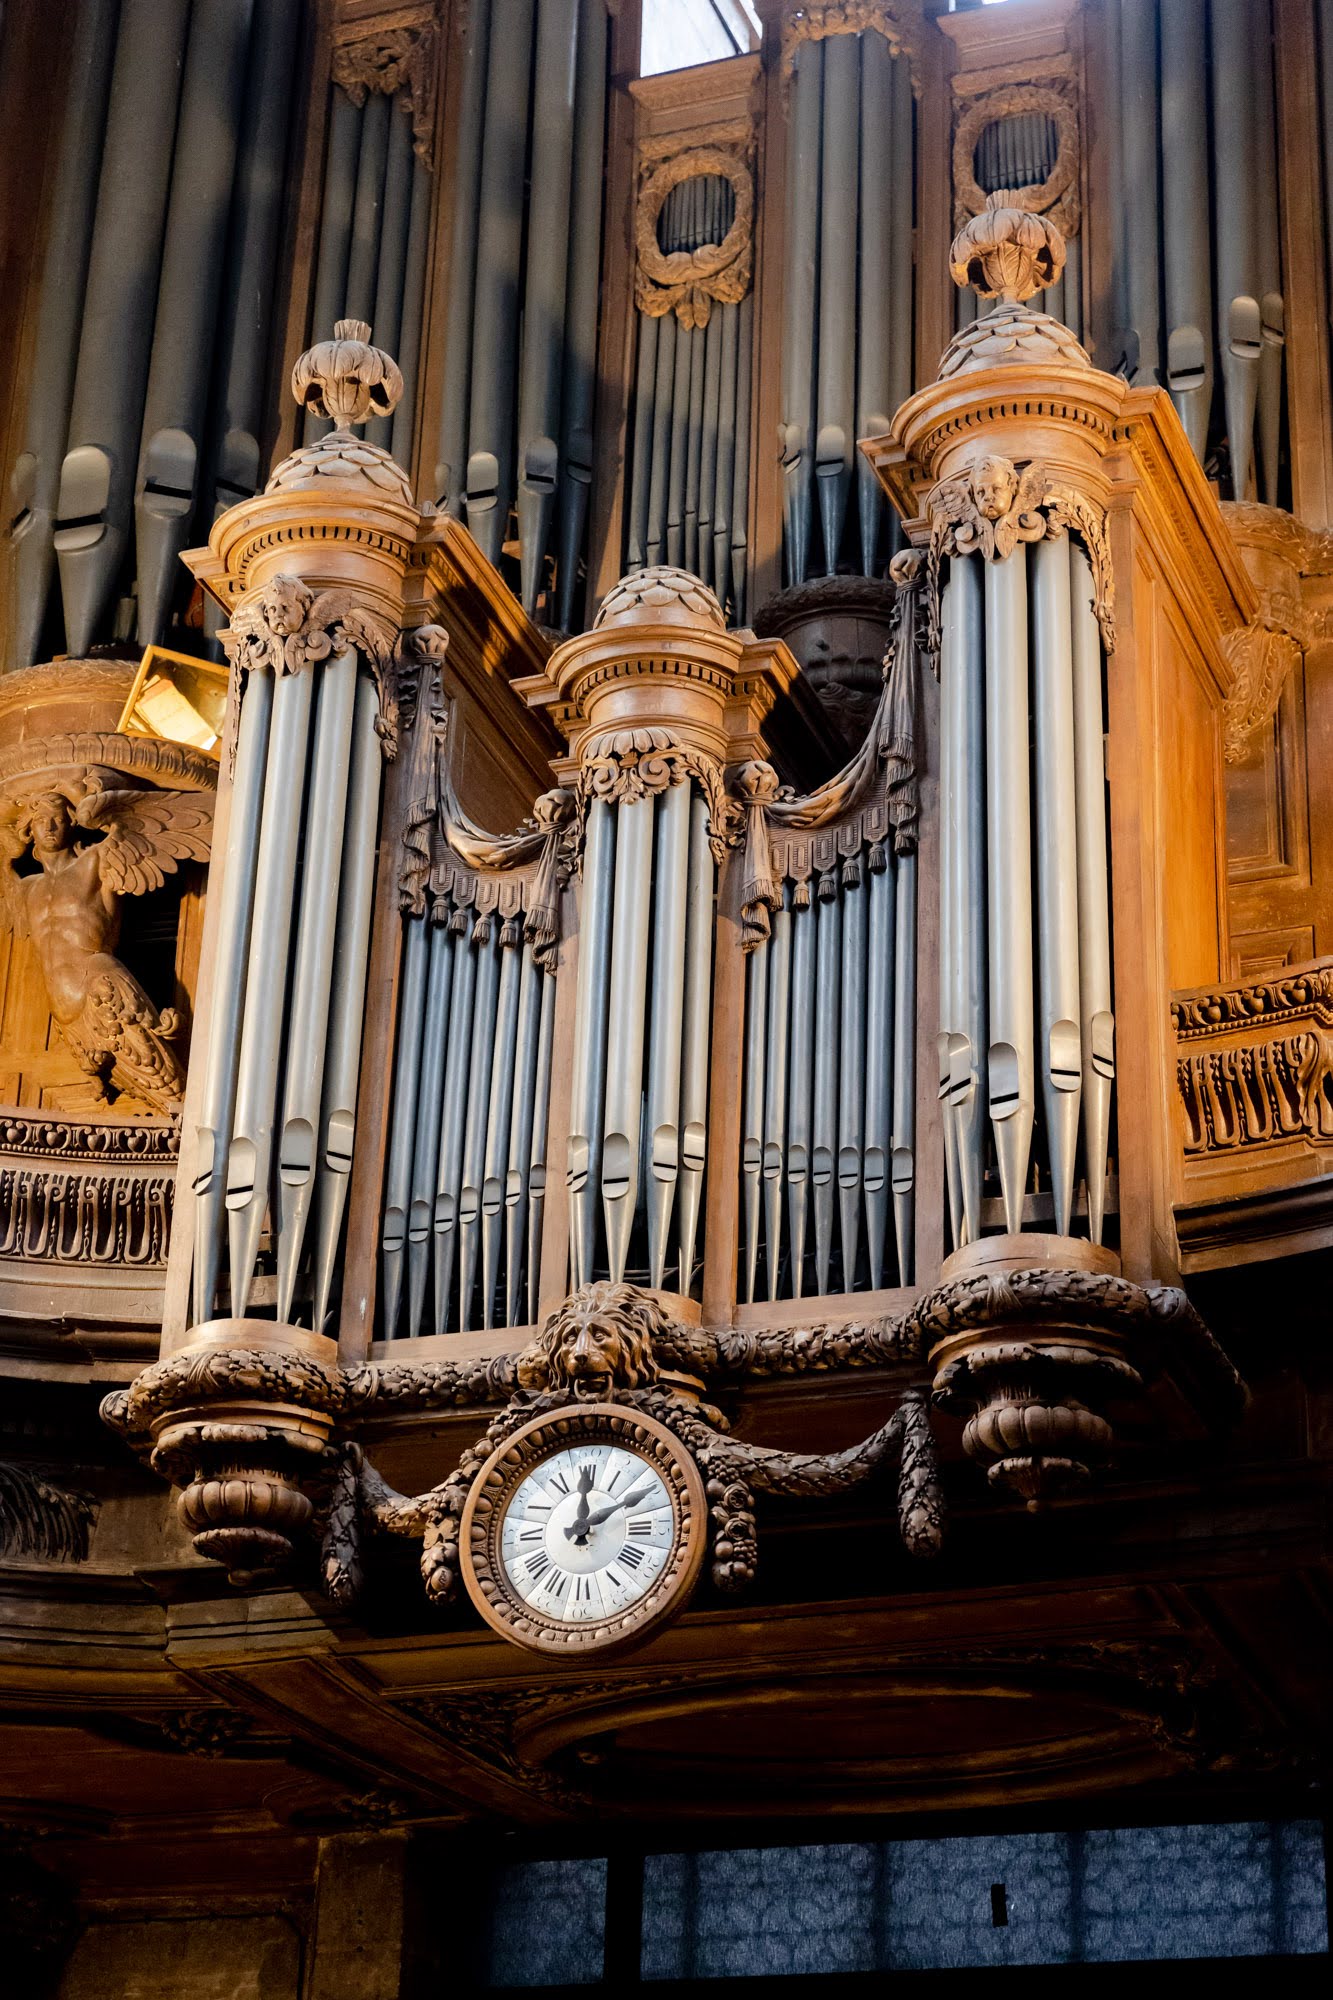 Grand orgue de l'église Saint-Dominique de Paris — Wikipédia